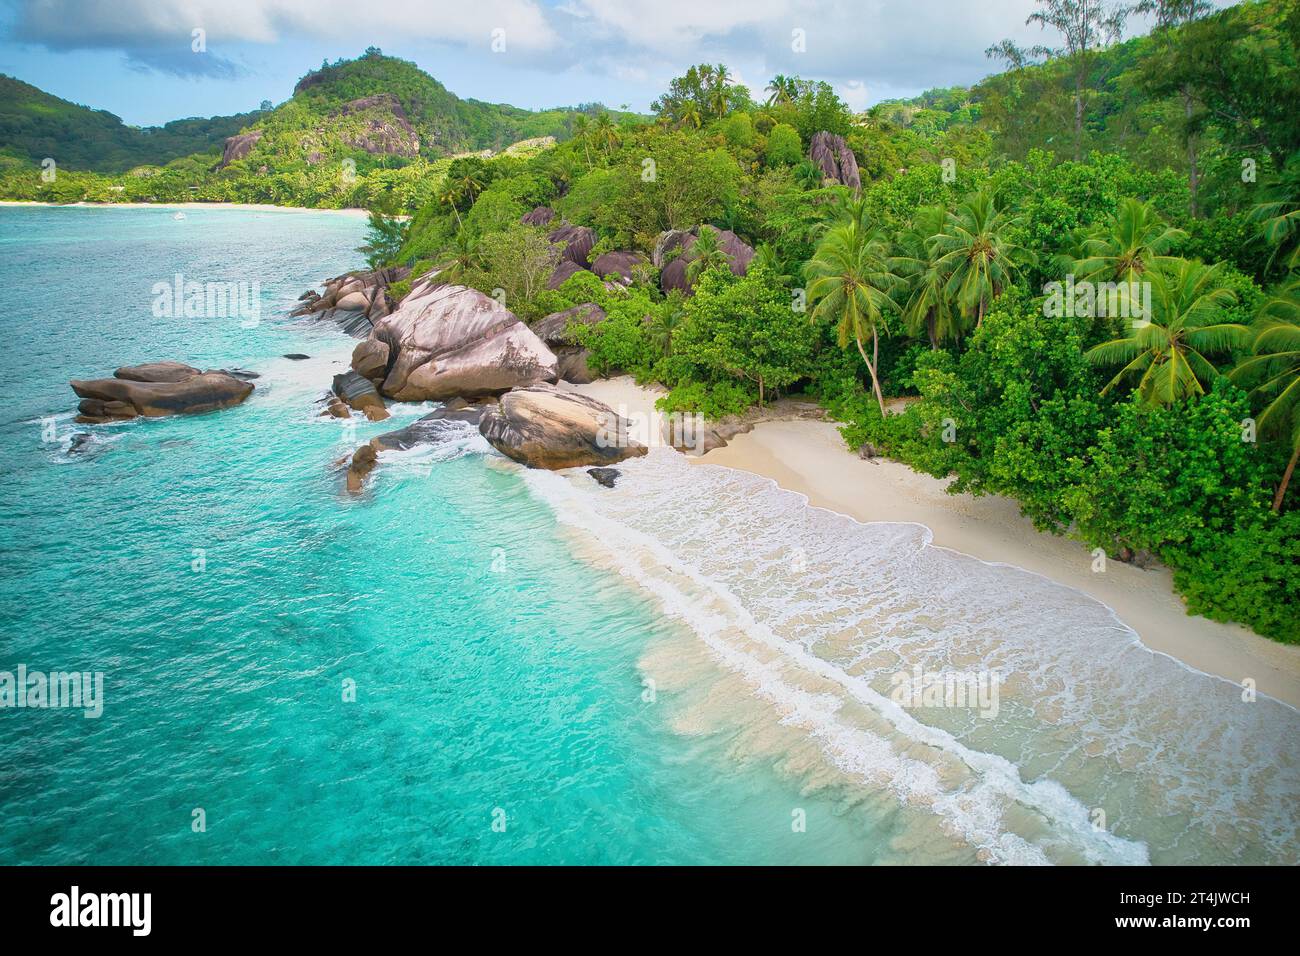 Drohne von baie lazare Beach, riesige Granitsteine, weißer Sandstrand, türkisfarbenes Wasser, Kokospalmen, sonniger Tag, Mahe Seychellen Stockfoto